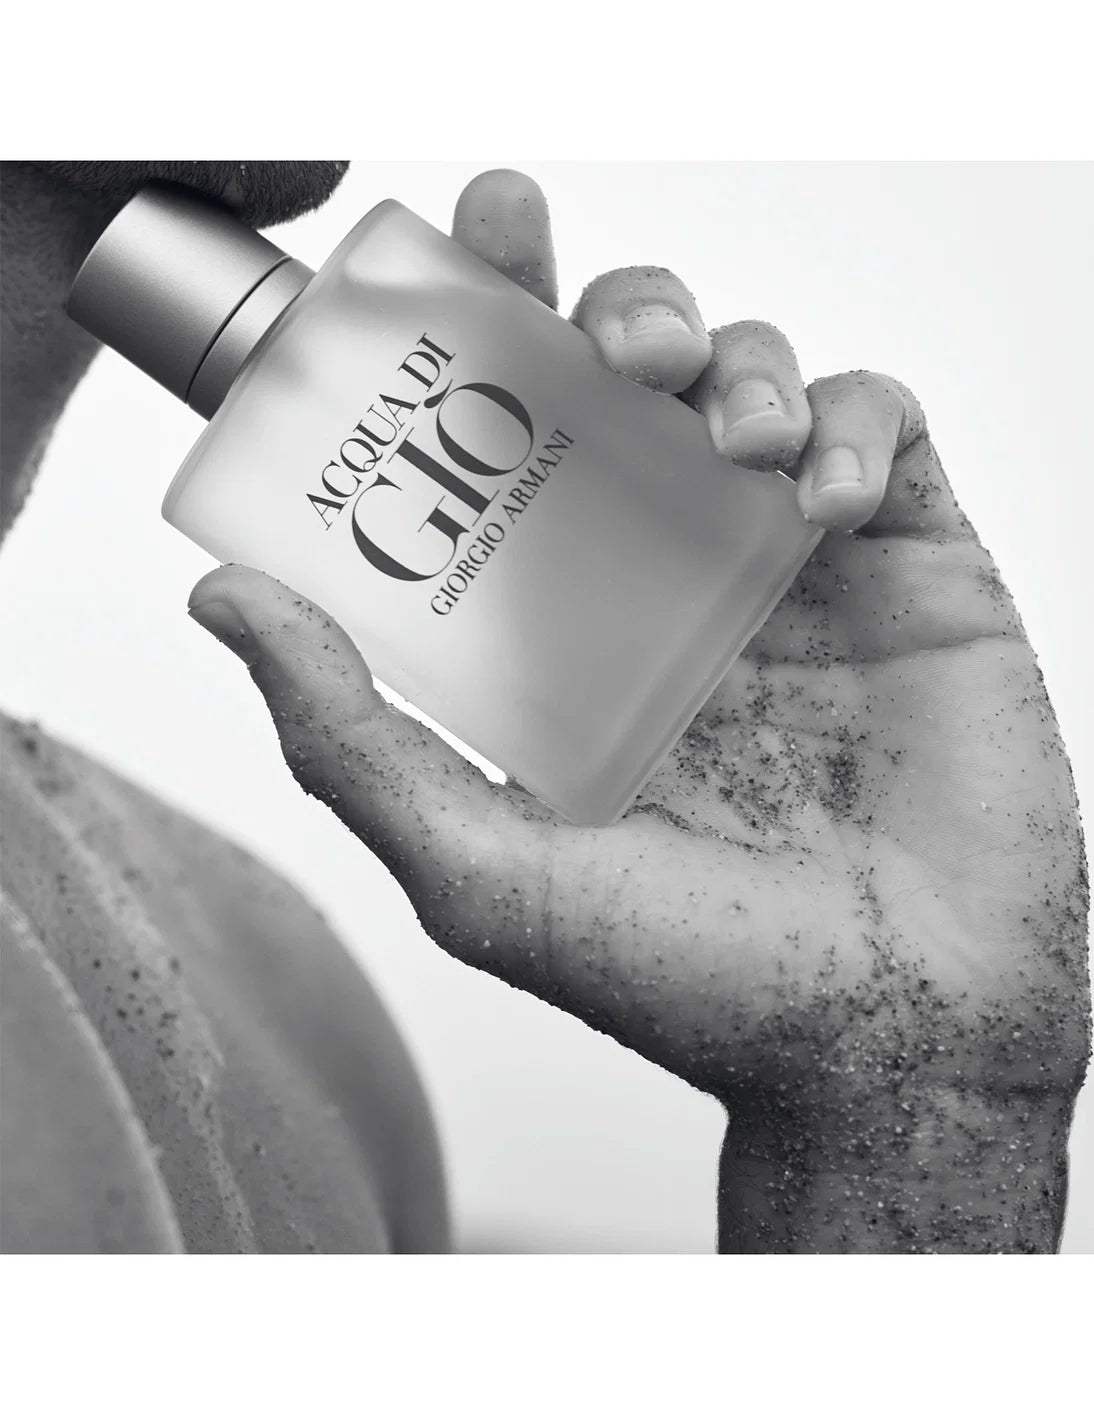 Giorgio Armani Acqua Di Gio EDT Spray For Men - Perfumora